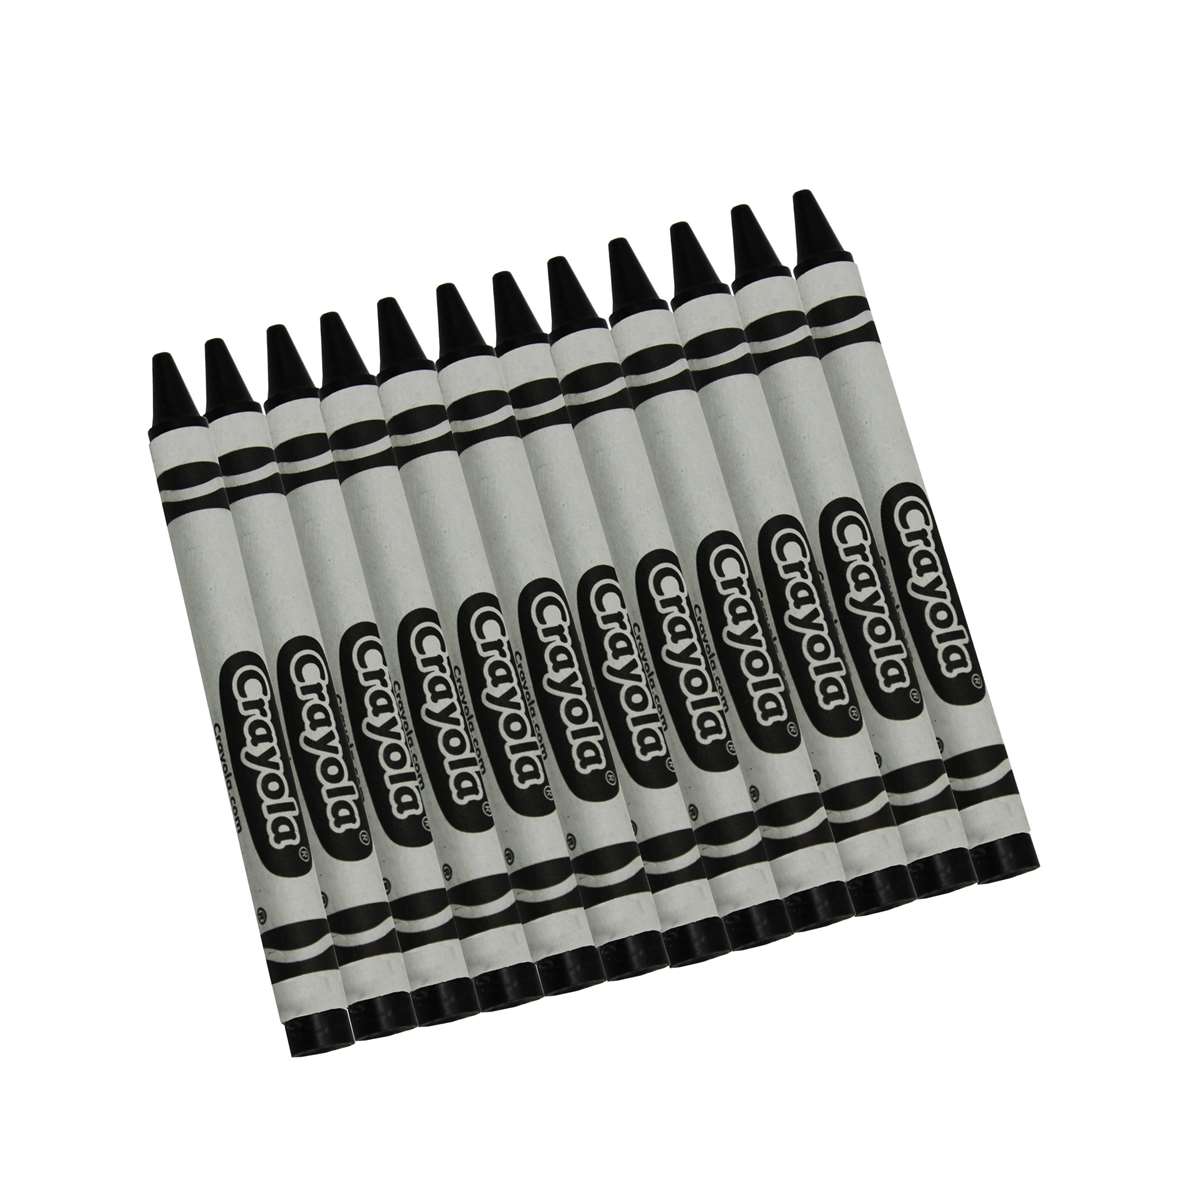 Crayola Regular Size Crayons 8 ct